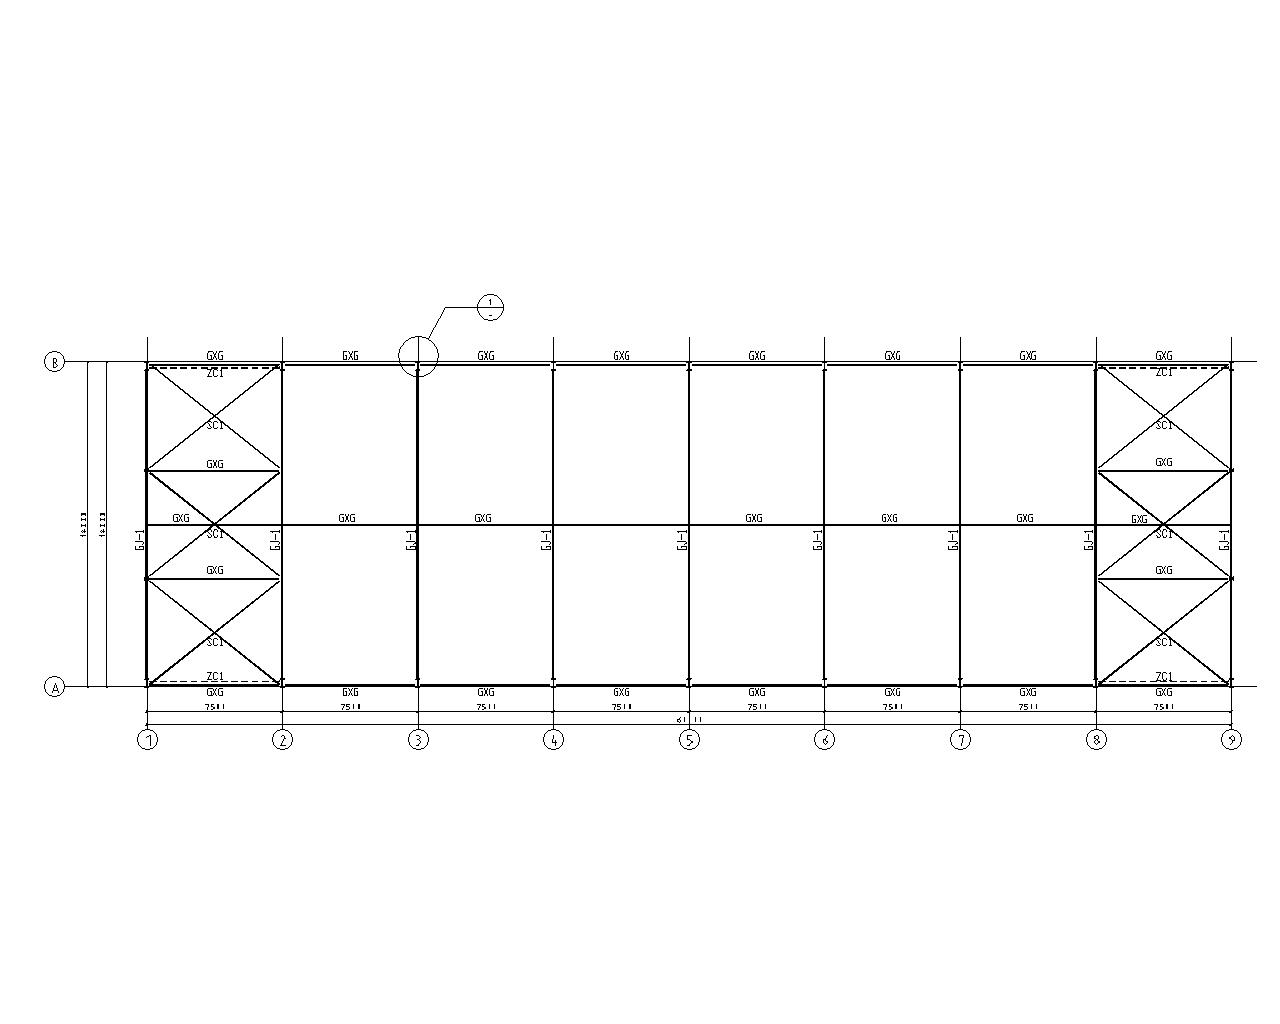 单层厂房 图纸深度:施工图 民用建筑设计使用年限:50年 结构形式:钢